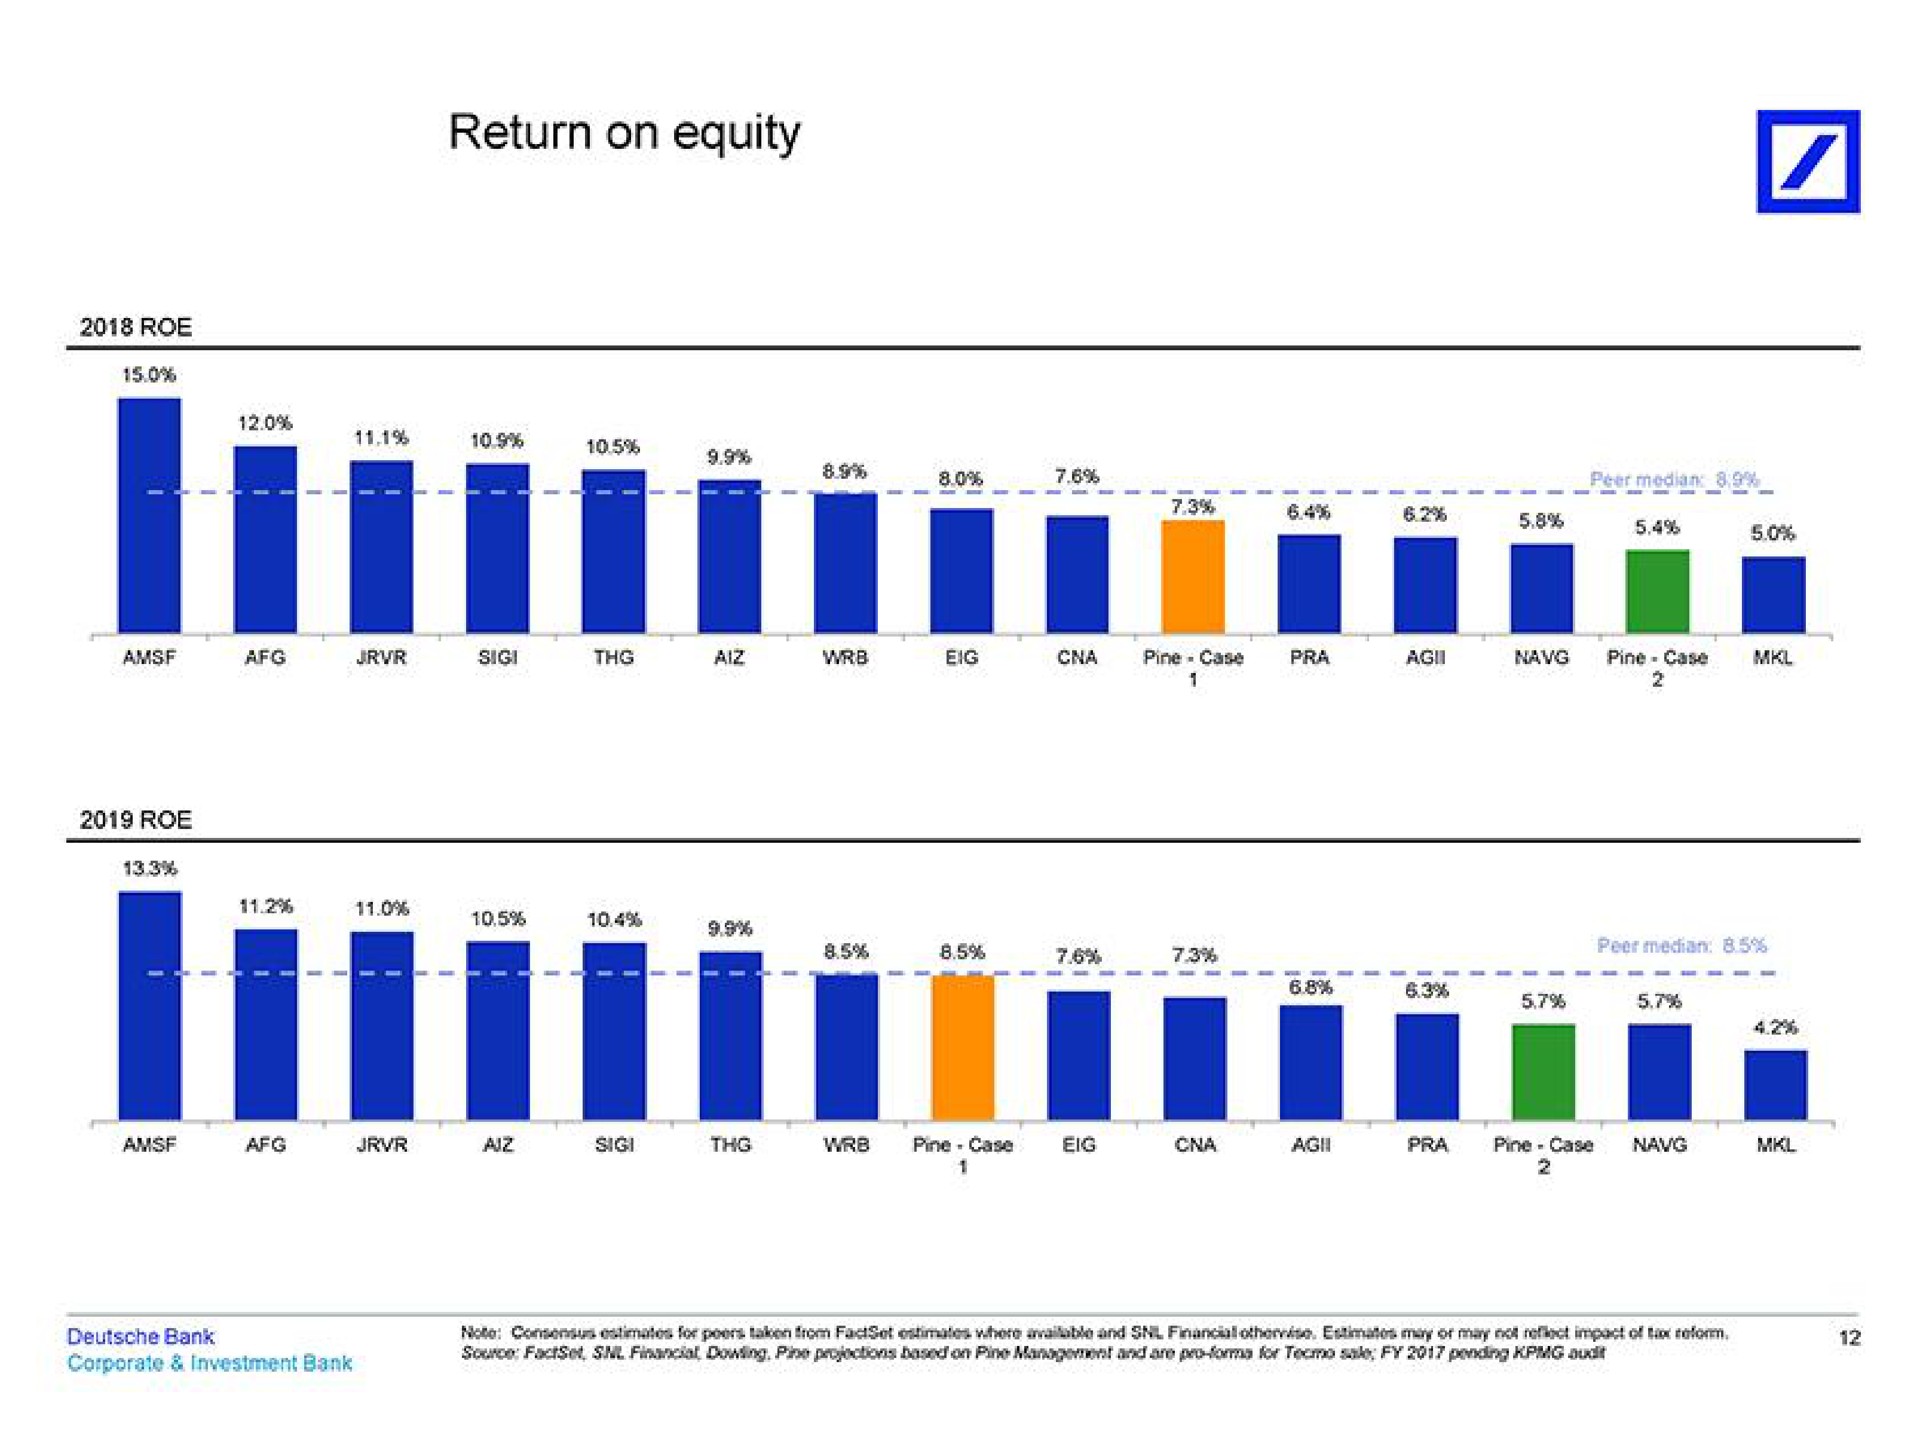 return on equity | Deutsche Bank